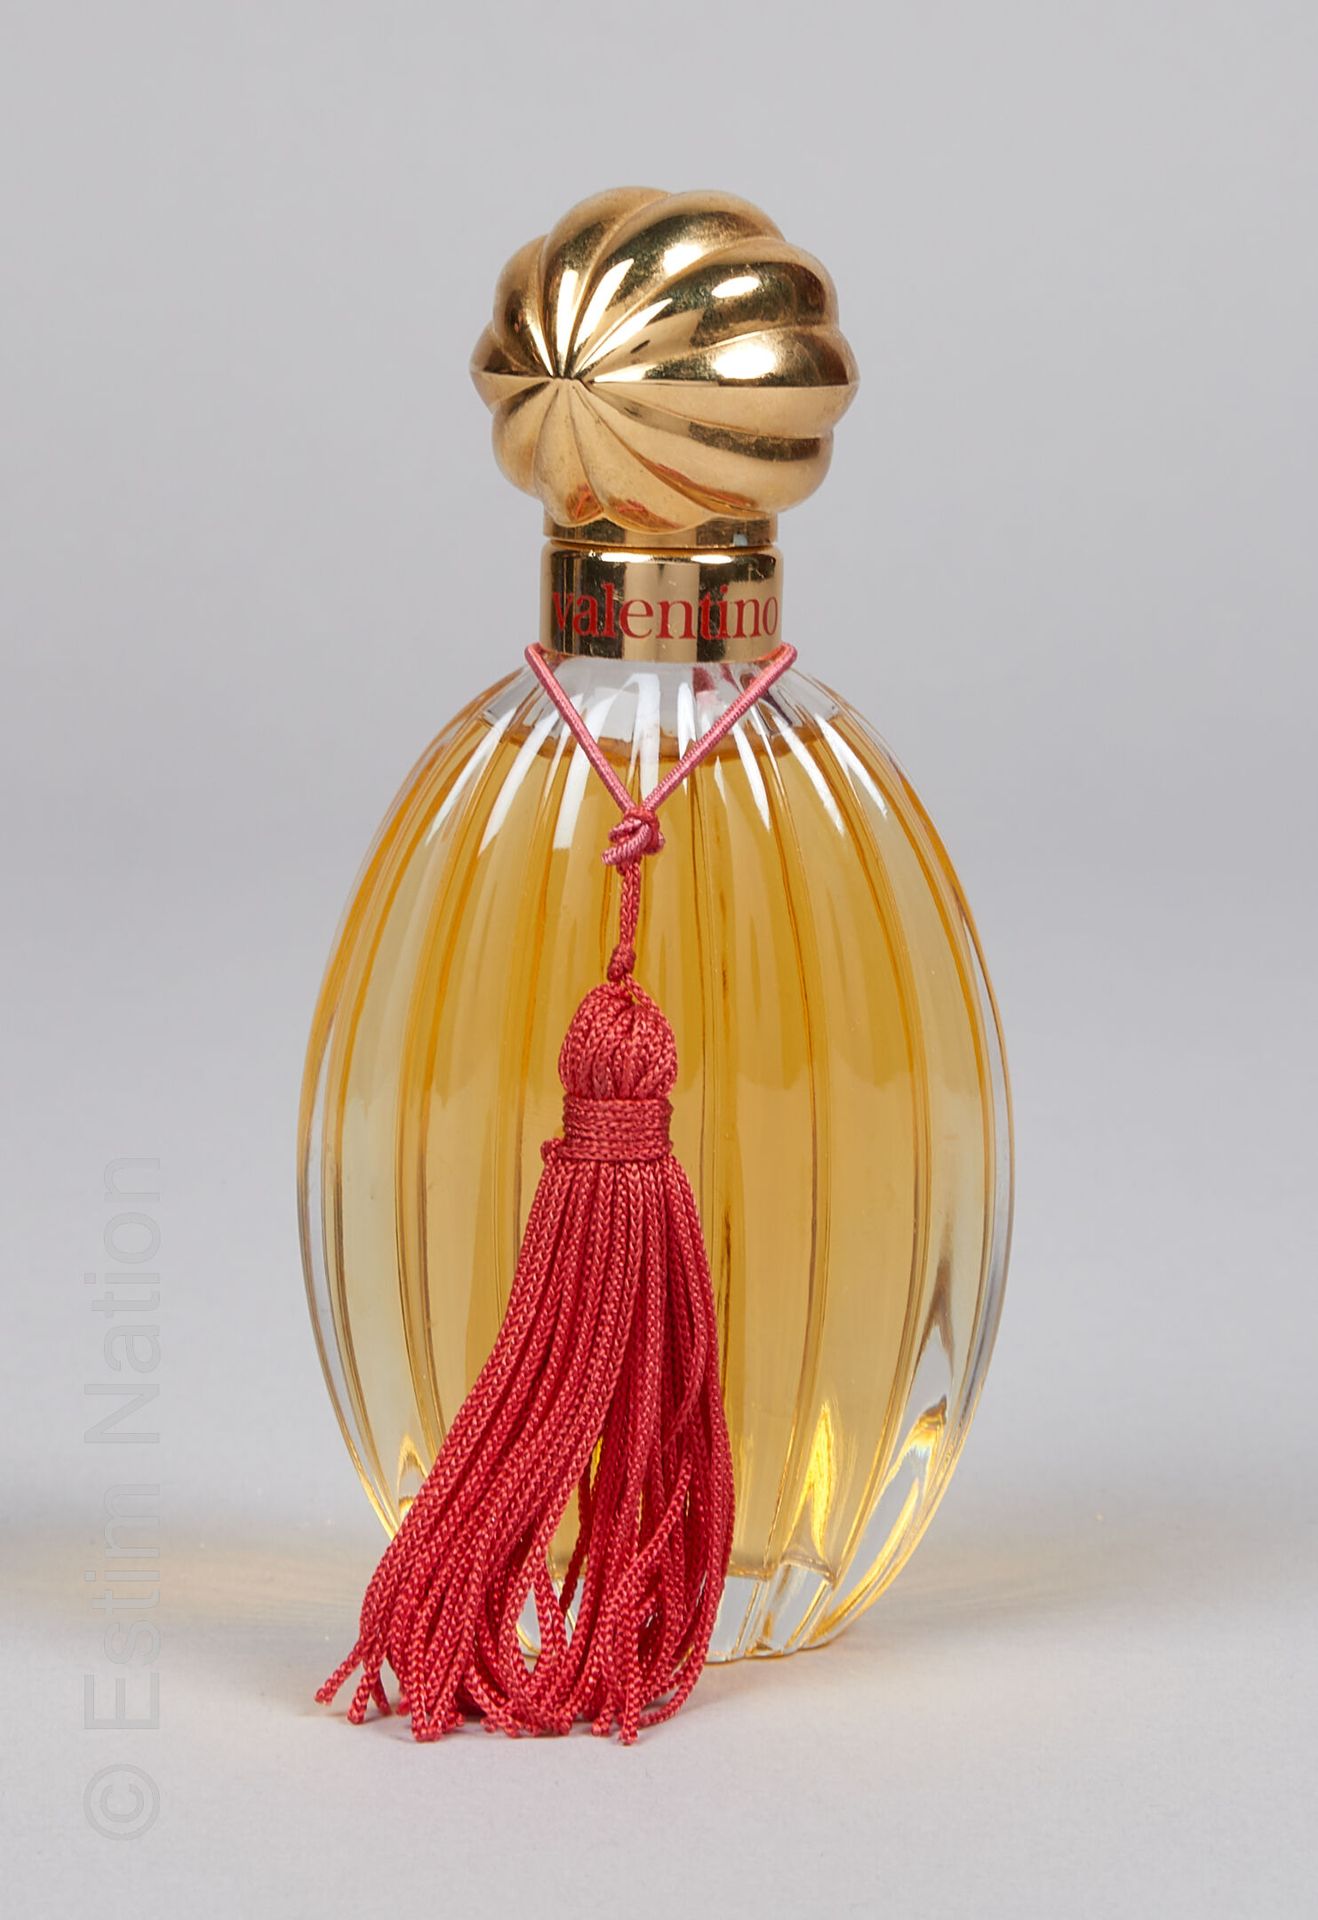 VALENTINO "Valentino" Ovale Glasflasche mit geriffeltem Dekor. Vergoldeter Versc&hellip;